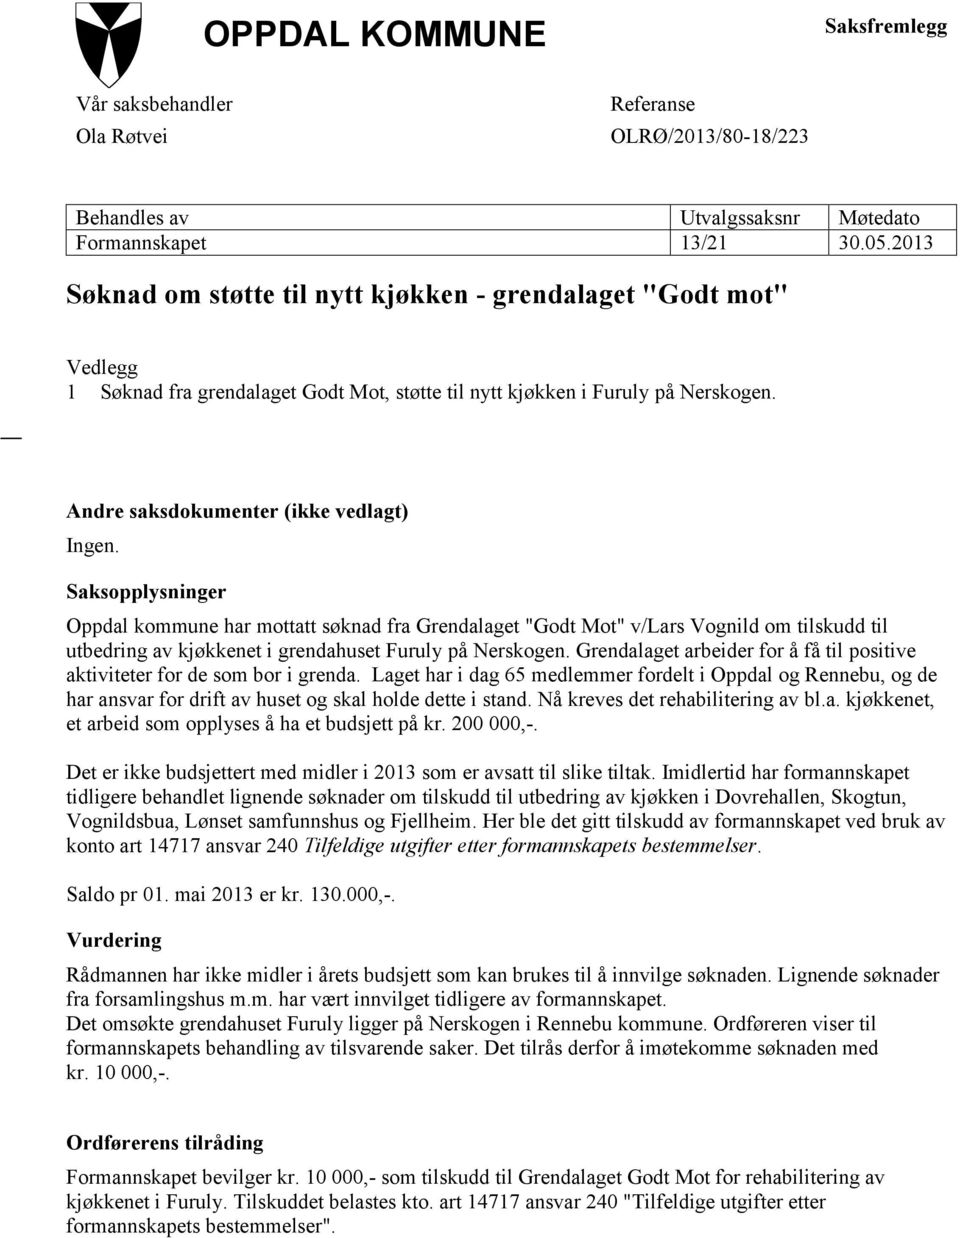 Saksopplysninger Oppdal kommune har mottatt søknad fra Grendalaget "Godt Mot" v/lars Vognild om tilskudd til utbedring av kjøkkenet i grendahuset Furuly på Nerskogen.